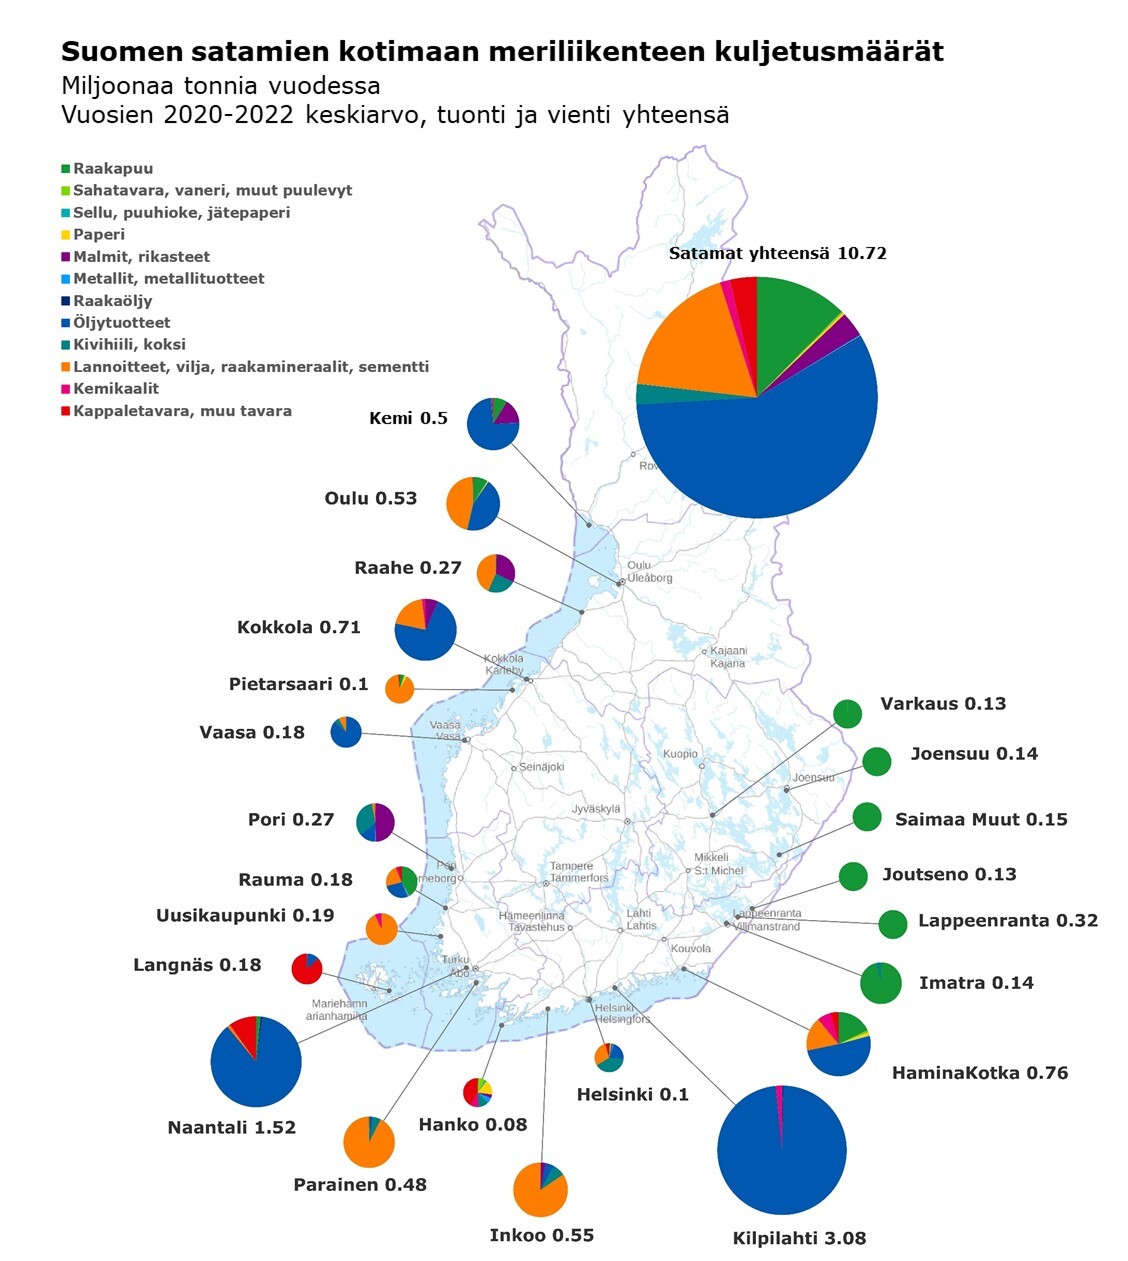 Kuvassa esitetty Suomen satamien kotimaan vesiliikenteen vuosien 2020–2022 kuljetusten keskiarvo (miljoonaa tonnia) ja eri tavaralajien osuudet (Tilastokeskus).